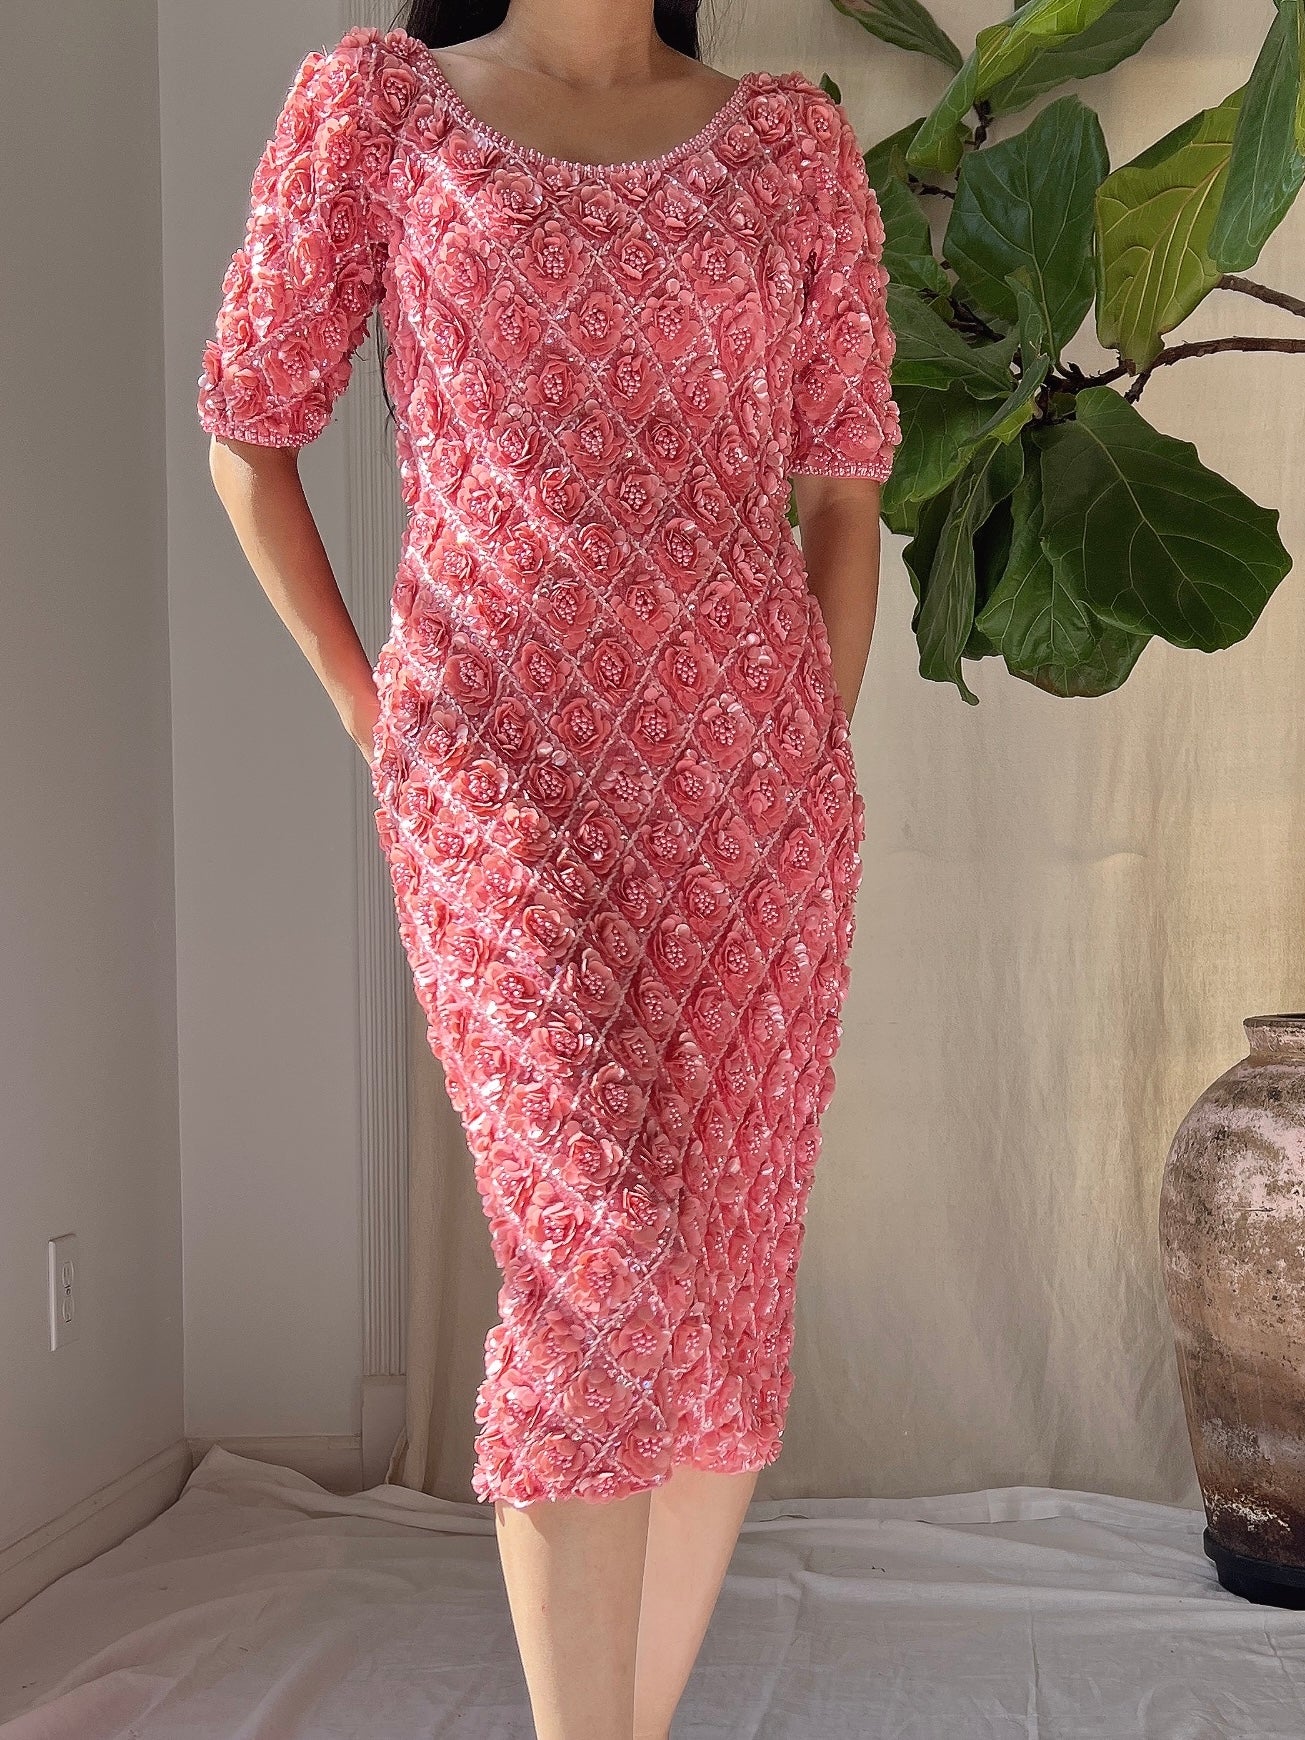 Rare 1960s Wool Hand-Beaded Dress - XS/S